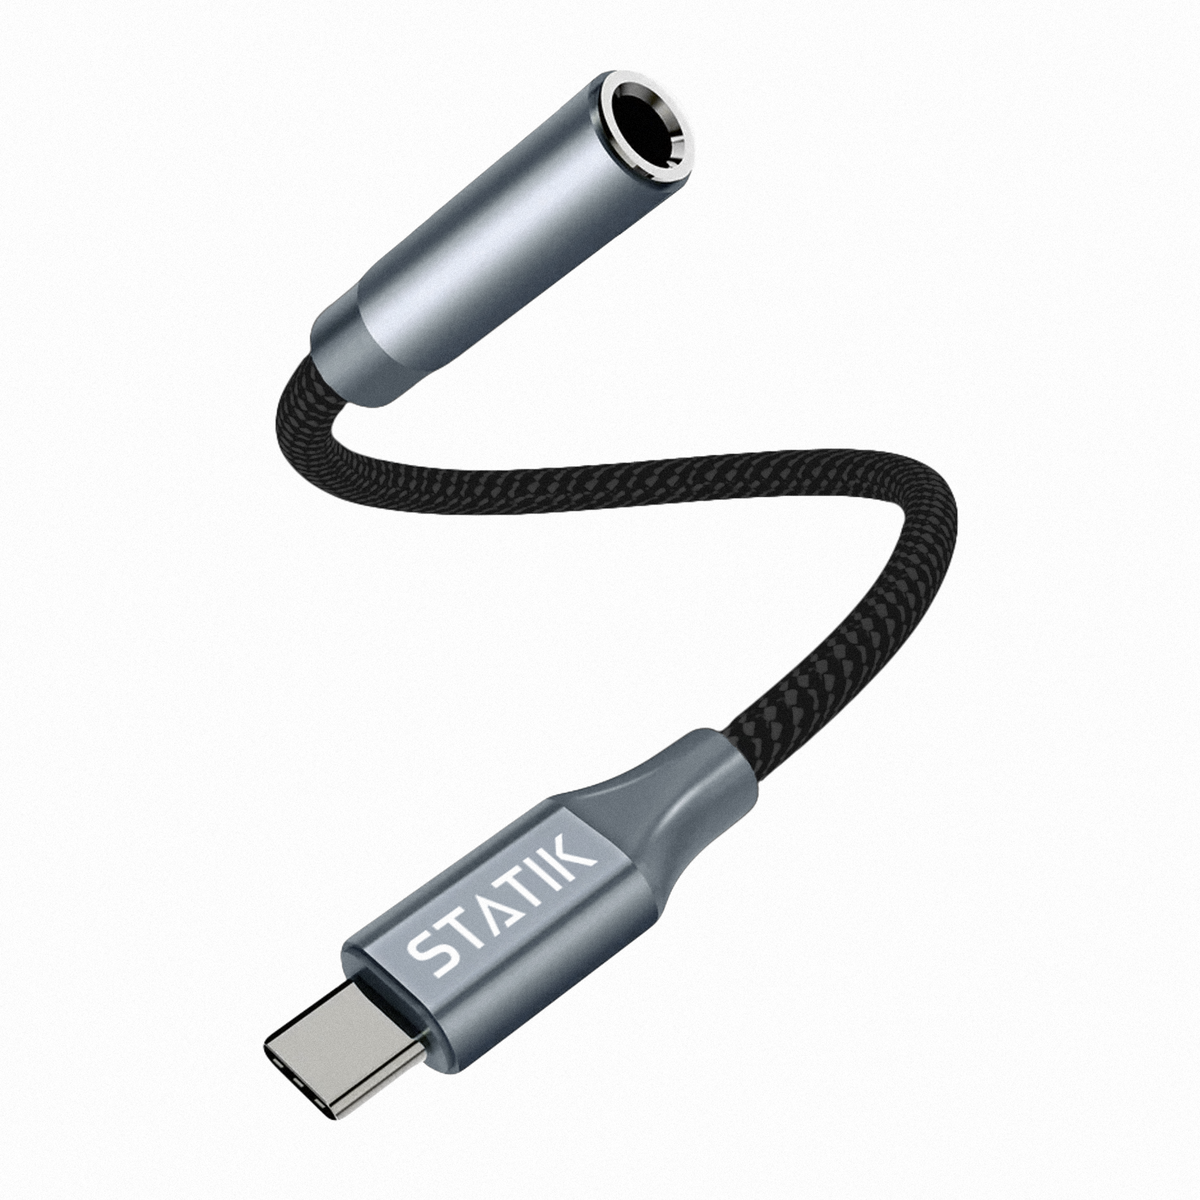 Adattatore audio | Convertitore jack per cuffie da AUX a USB C | USB-C a 3,5 mm